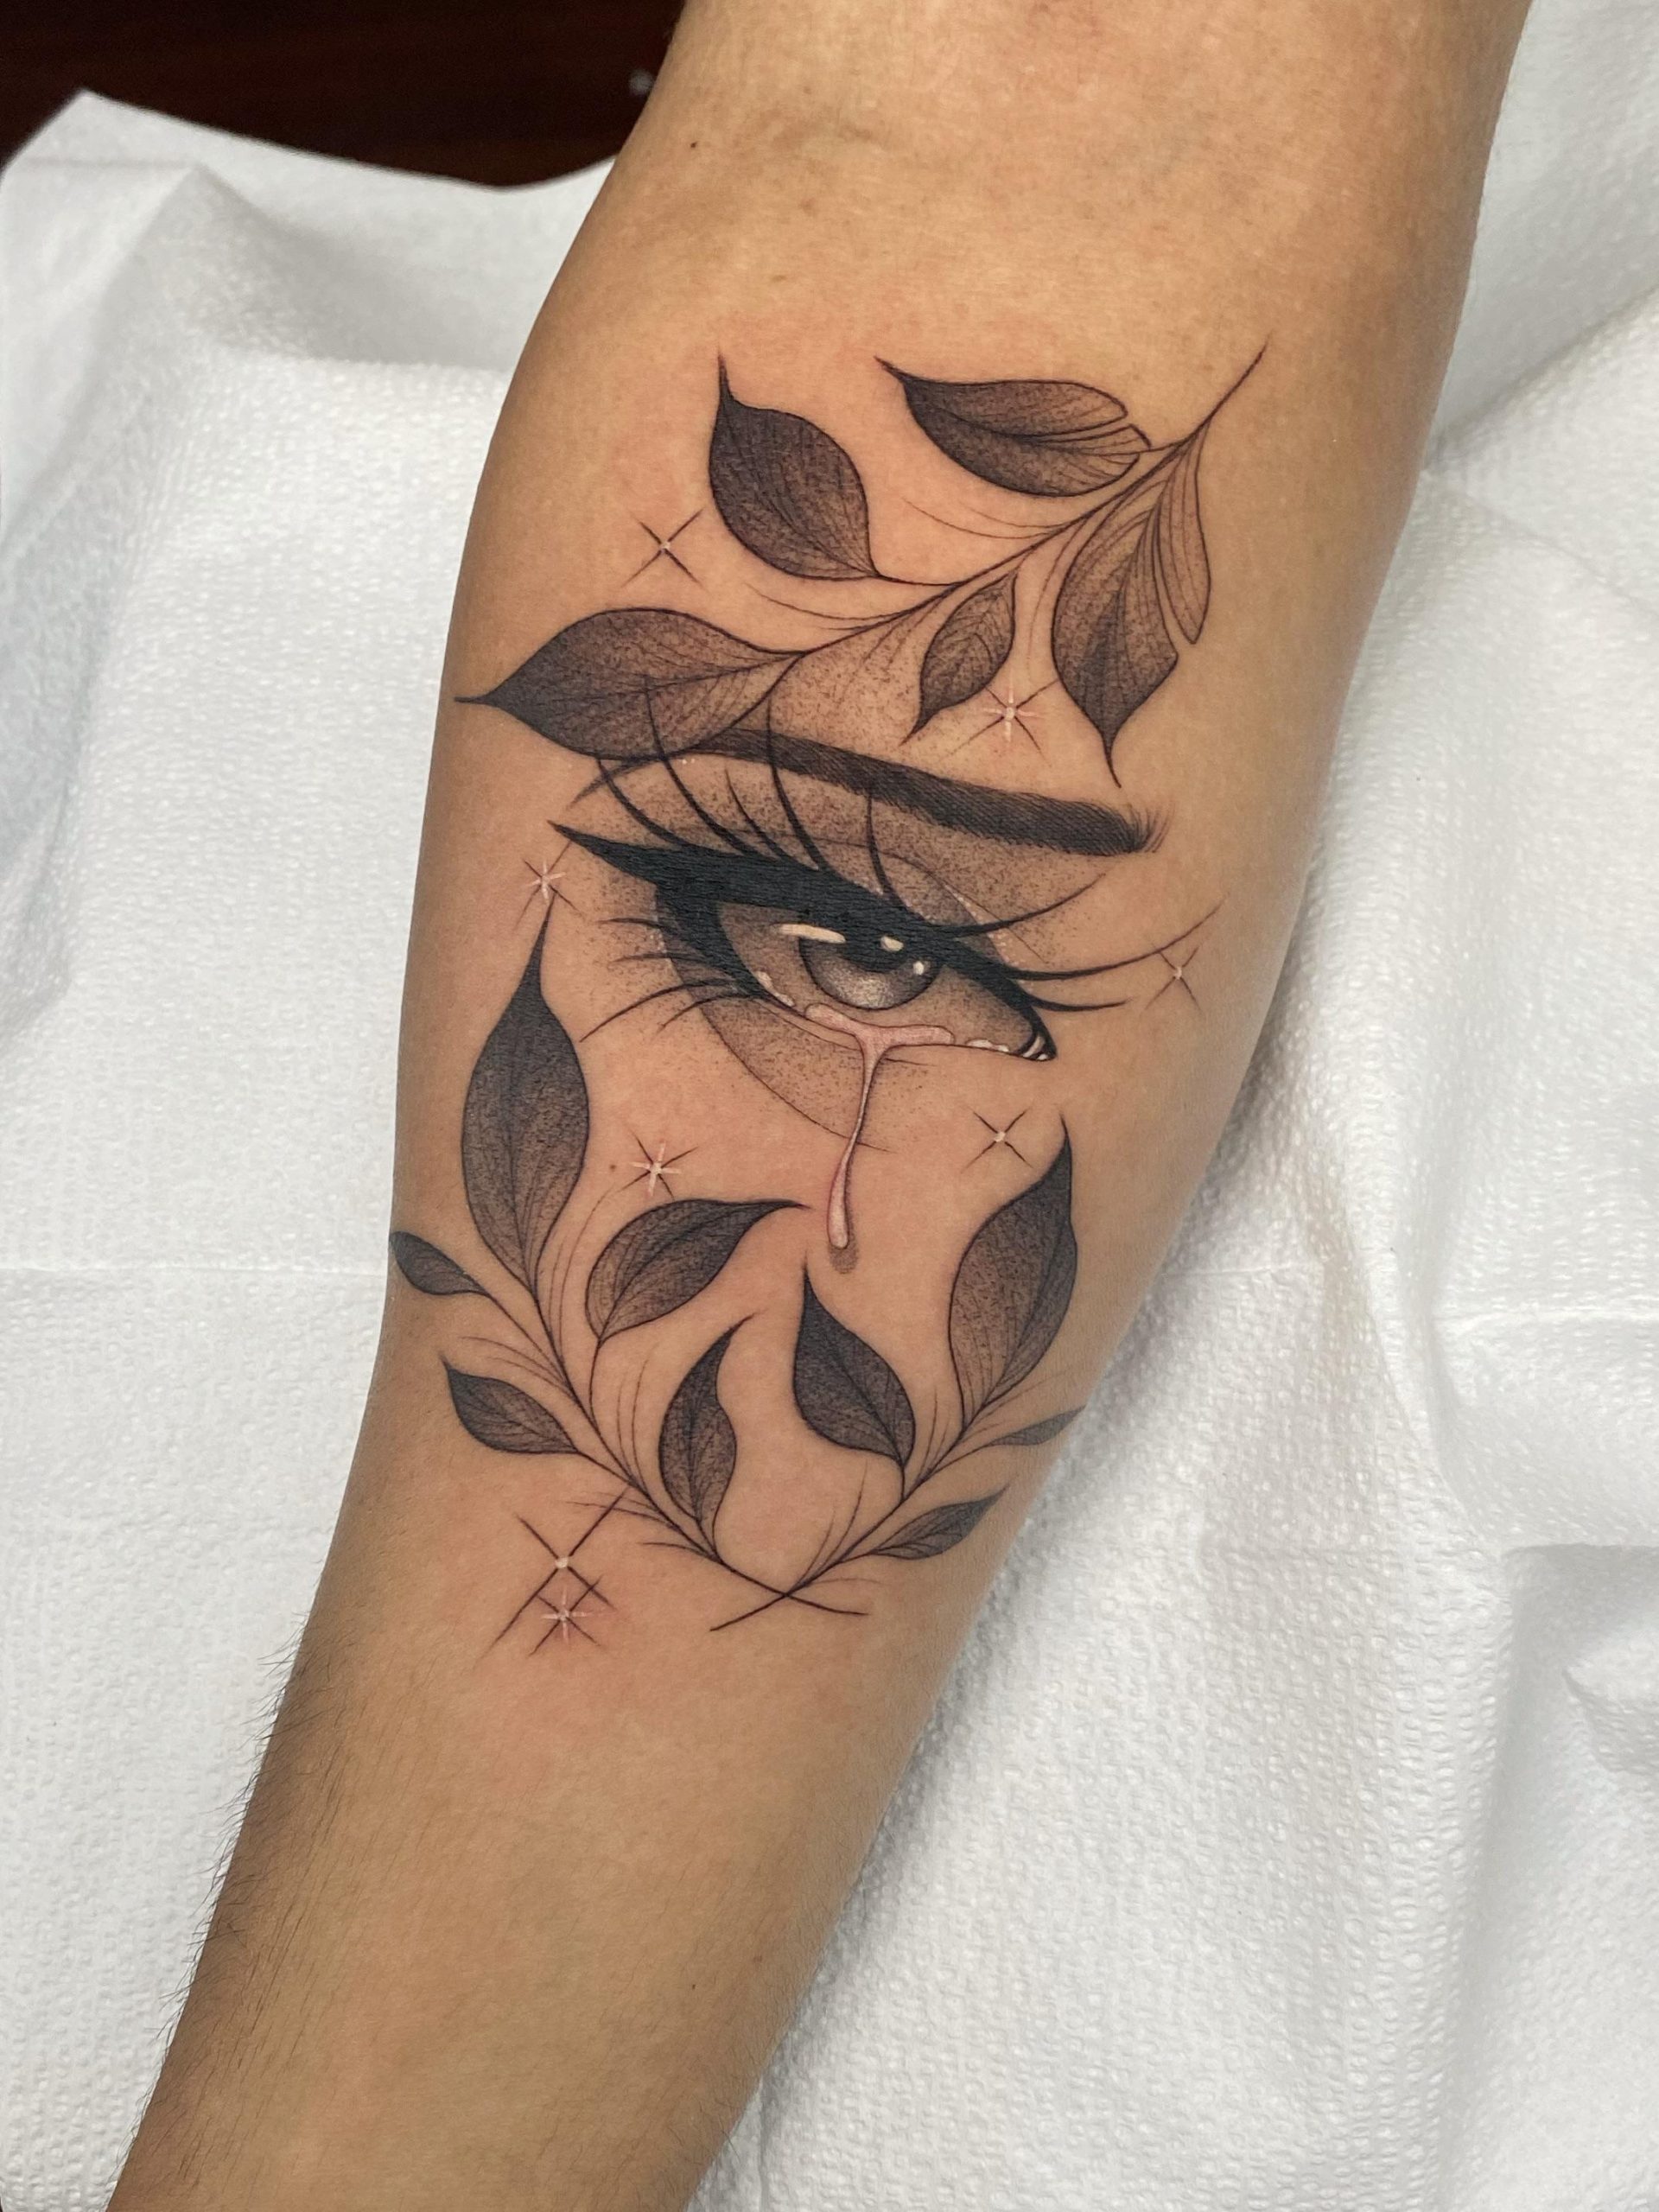 8. Tattoo of a Tearful Eye